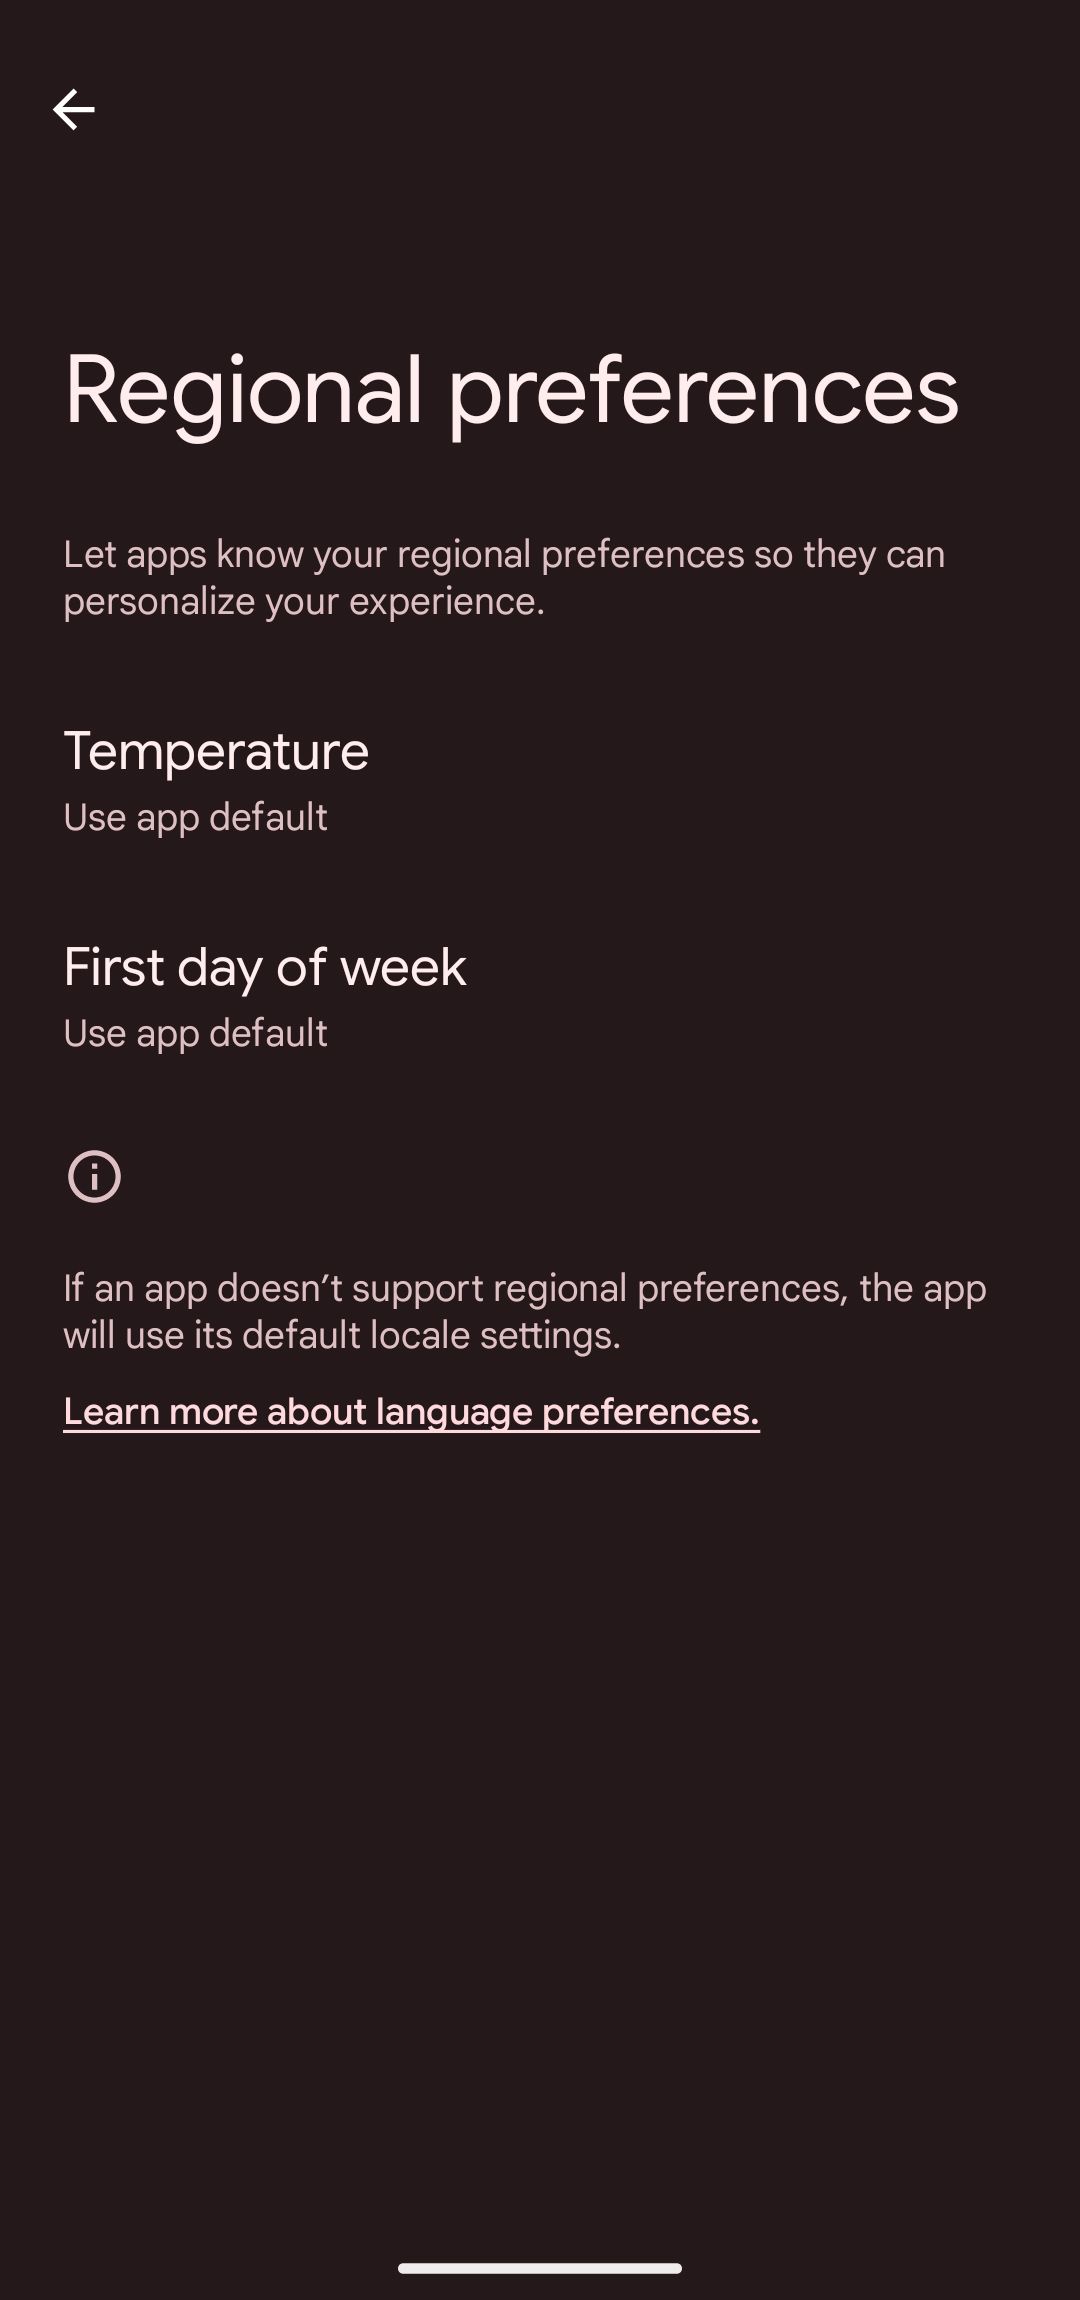 preferências regionais de temperatura e primeiro dia da semana